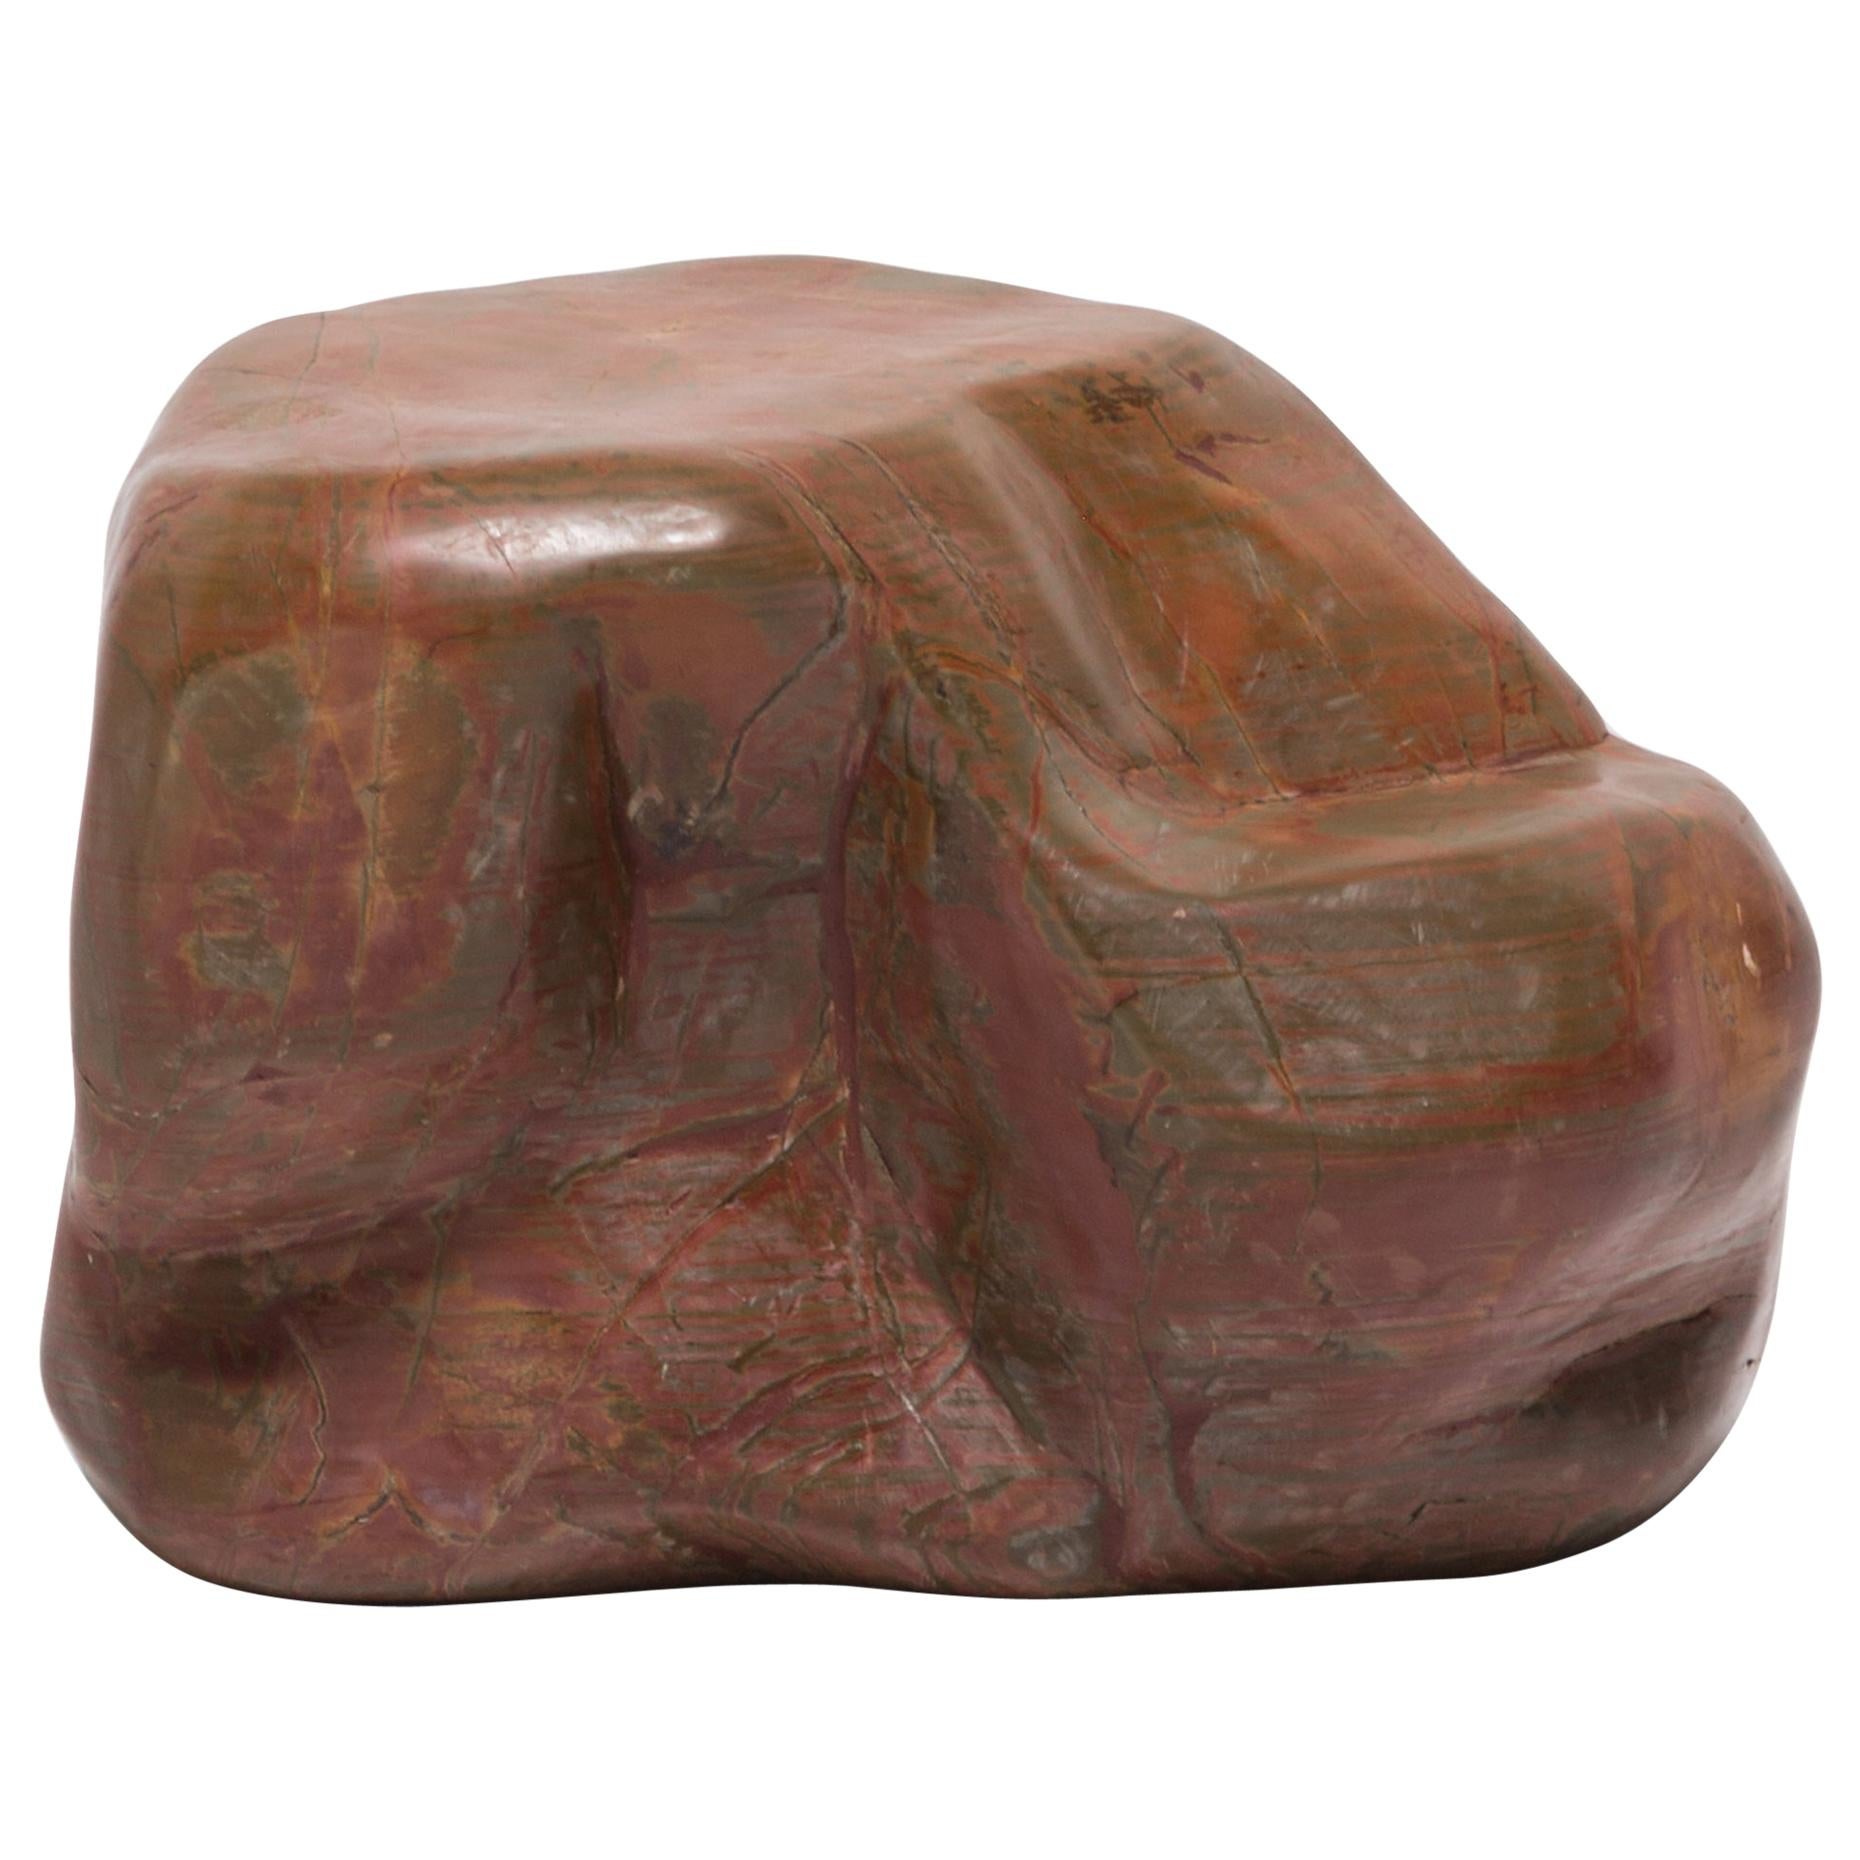 Chinese Fugui Meditation Stone